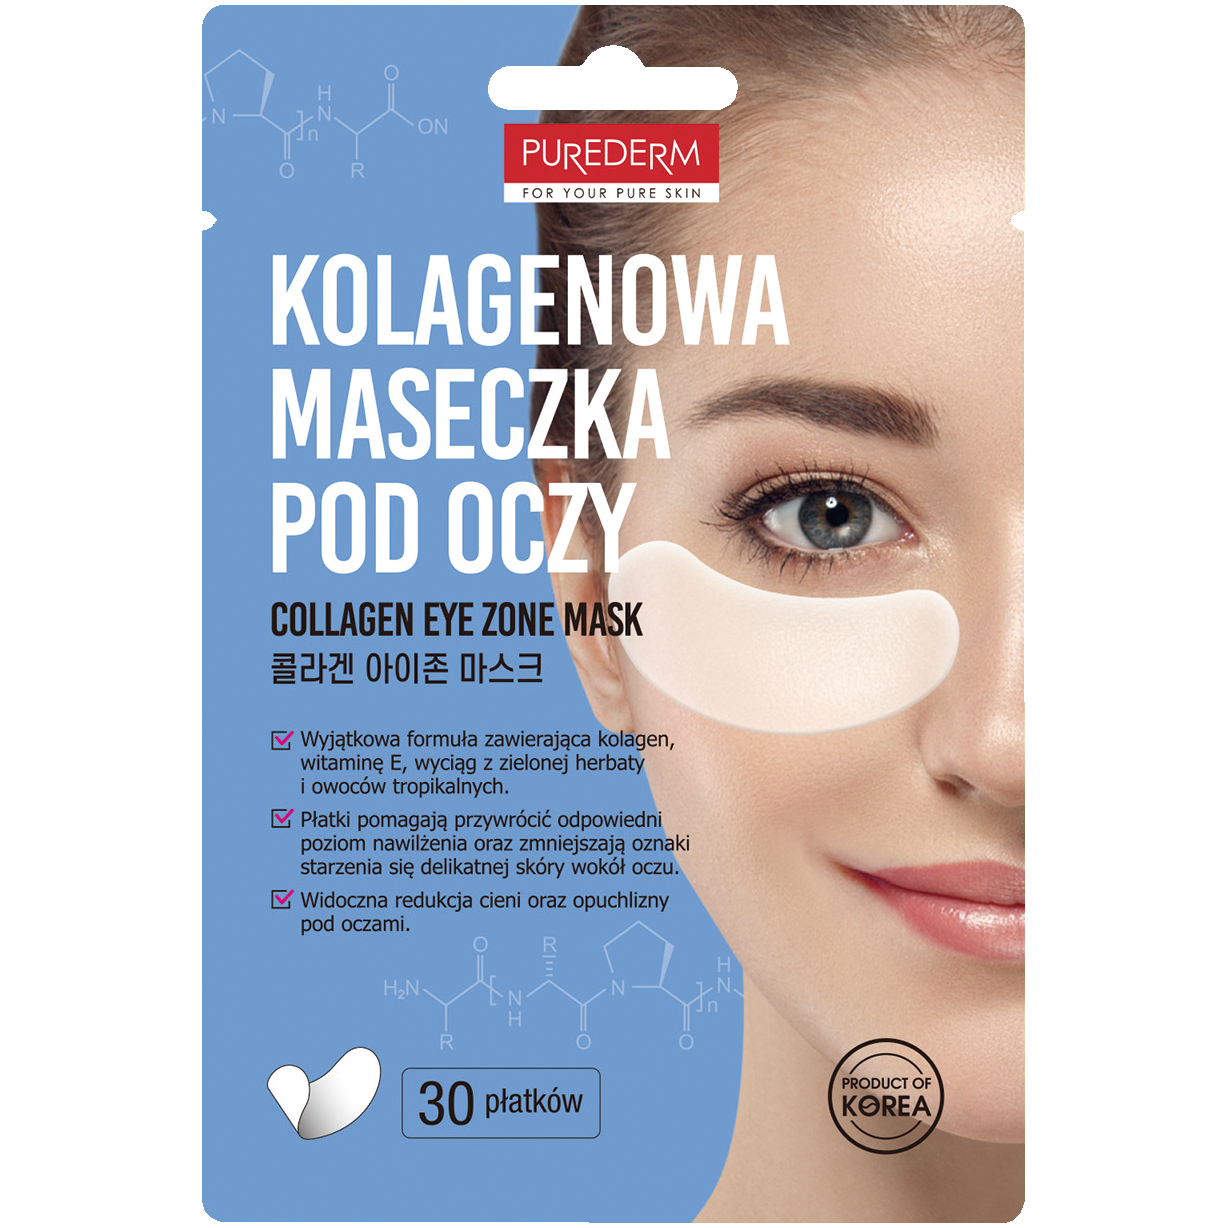 Purederm kolagenowa maseczka pod oczy, 30 szt./1 opak. | hebe.pl